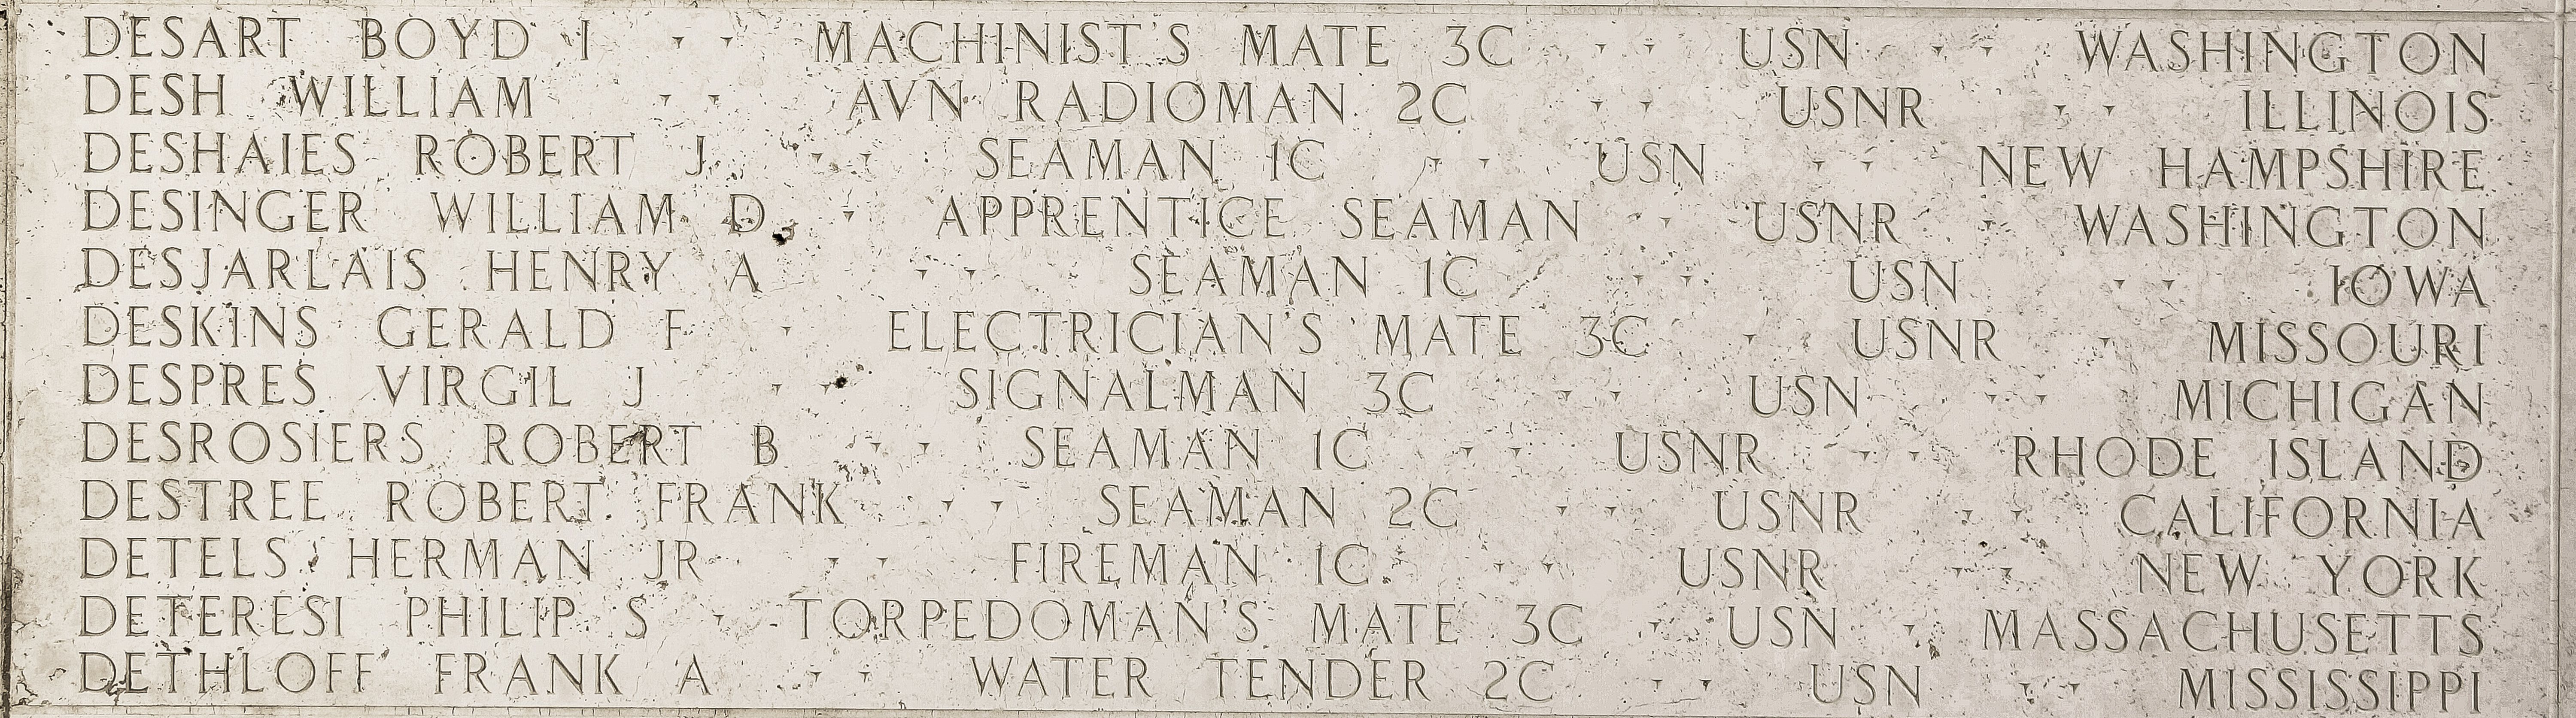 Philip S. Deteresi, Torpedoman's Mate Third Class